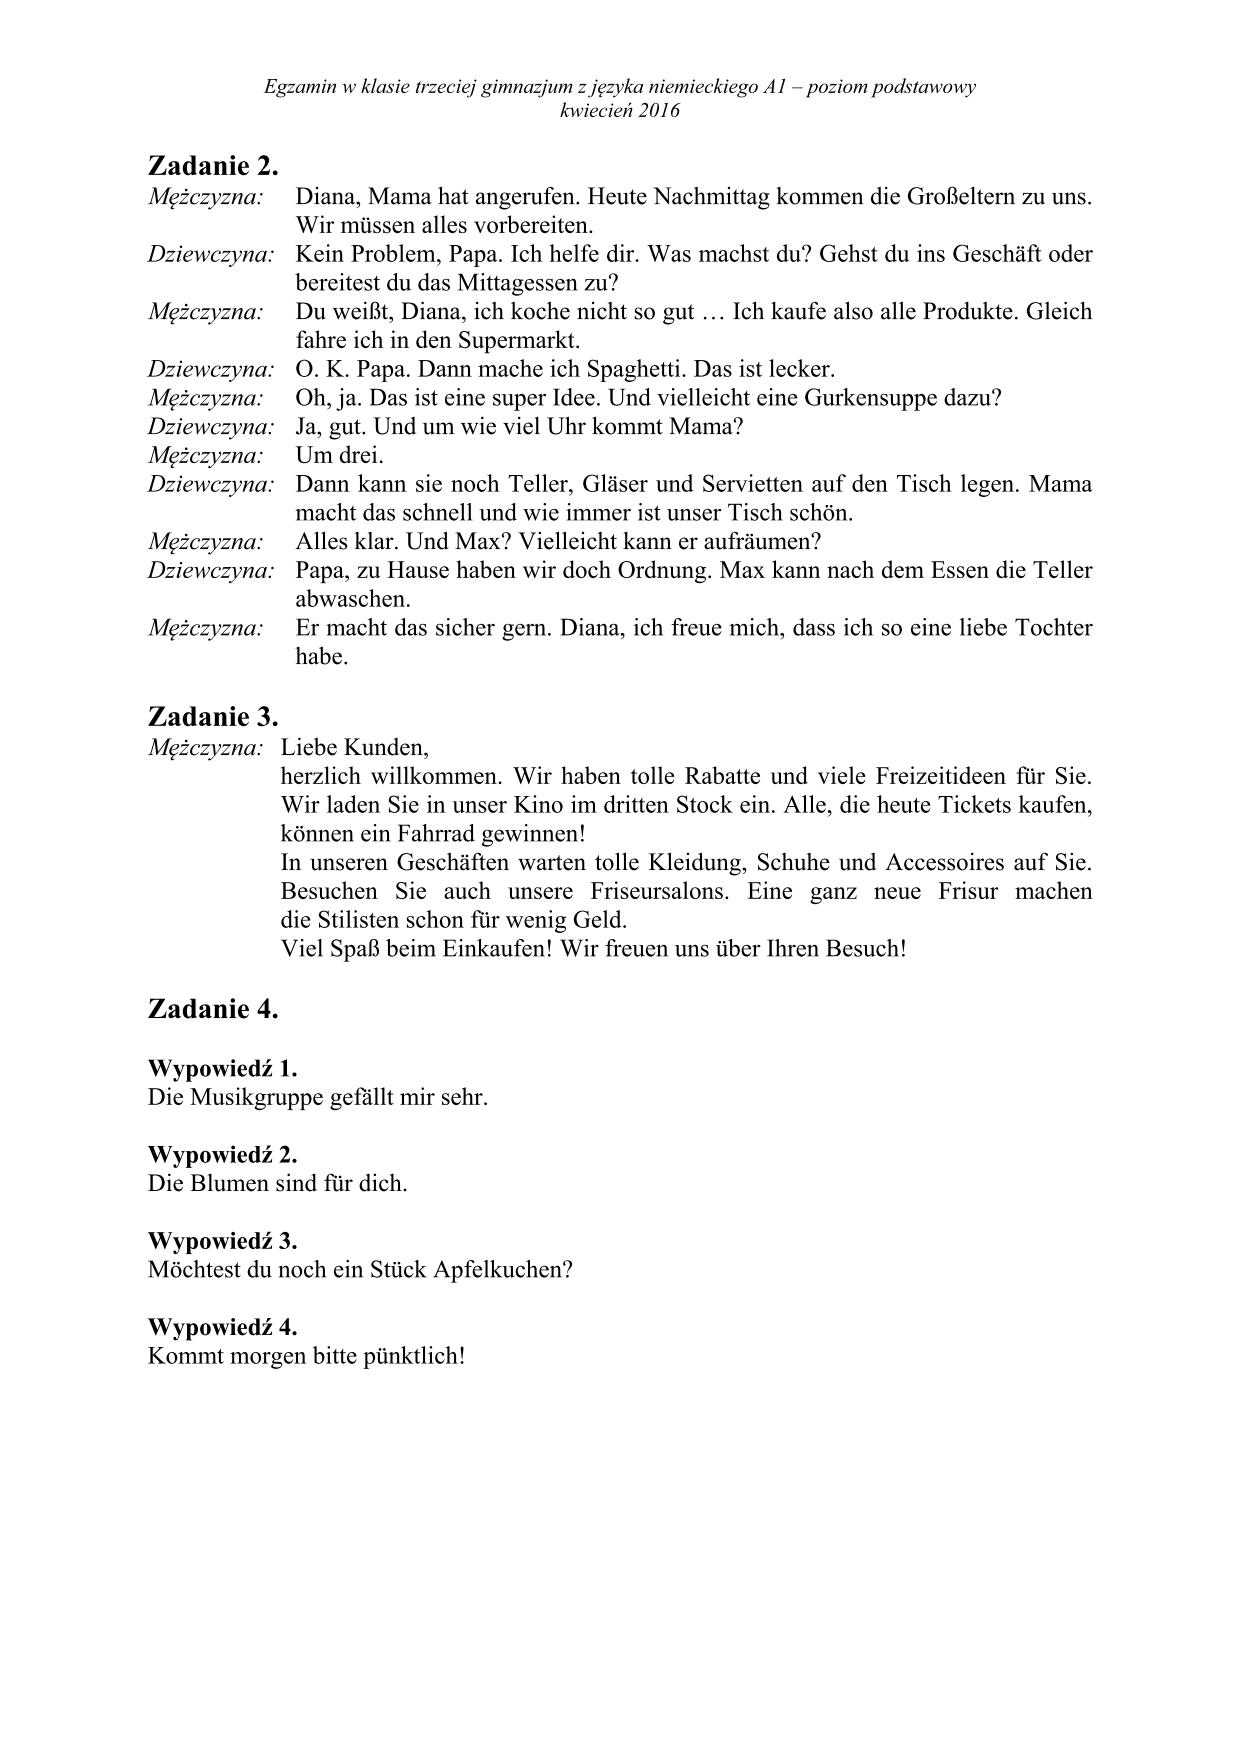 transkrypcja-niemiecki-poziom-podstawowy-egzamin-gimnazjalny-2016 - 2